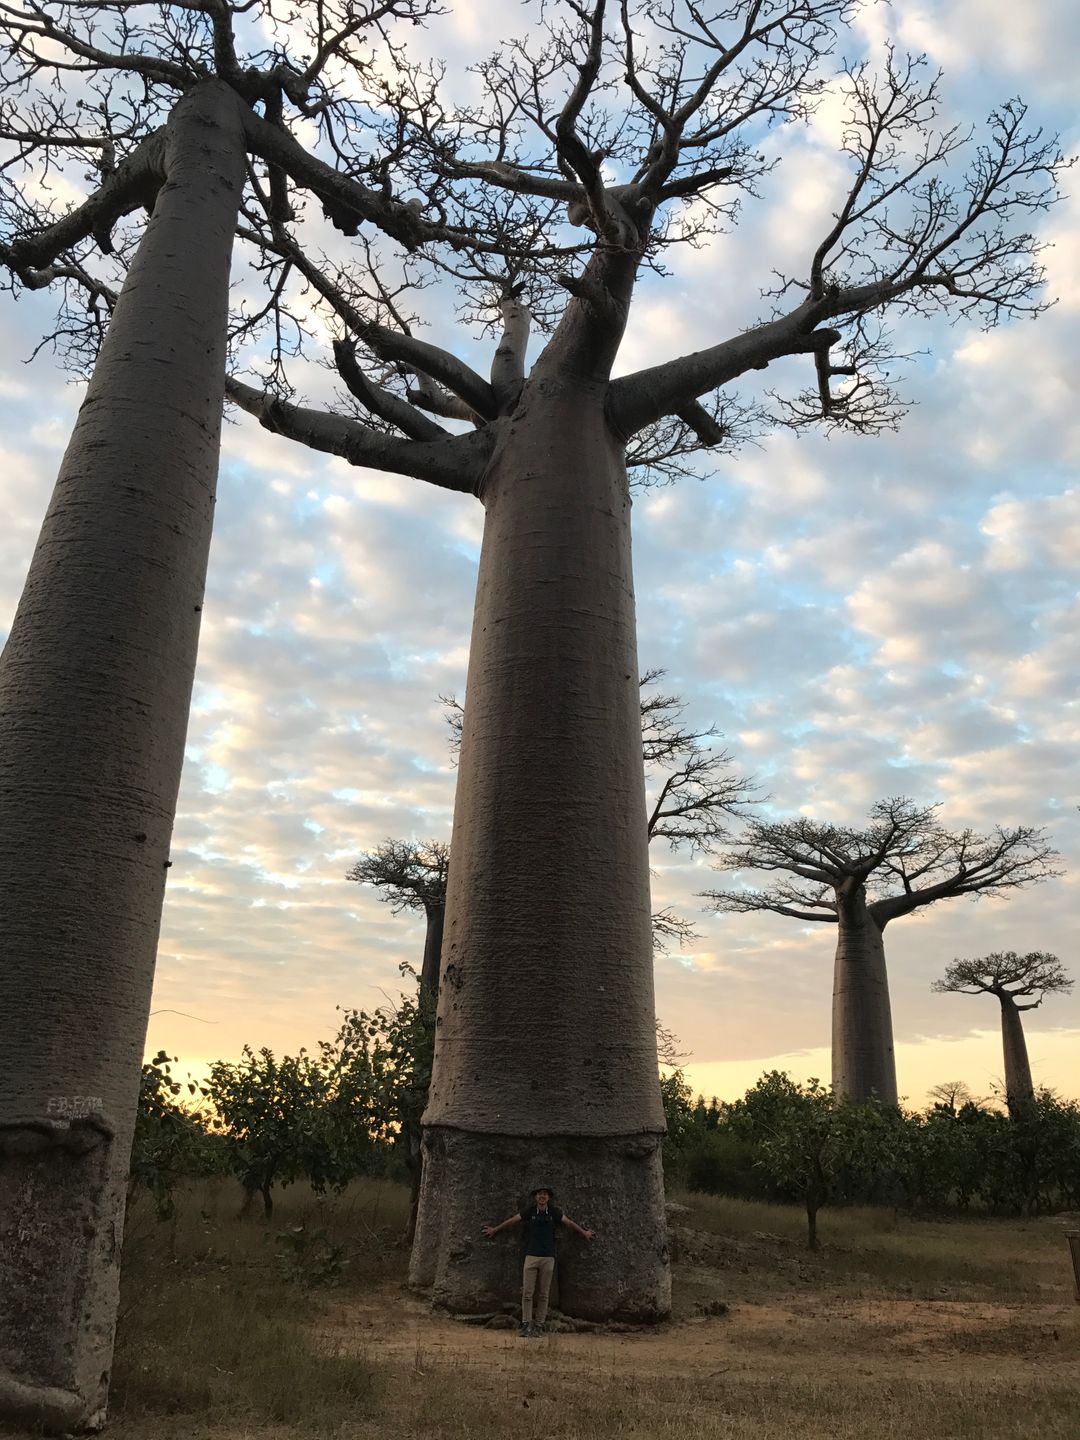 Baoba樹非常巨大，高度可達30公尺，直接可達11公尺，可以媲美那些十人環抱神木。目前全世界共有8種Baoba，分別在澳洲(1)、非洲大陸(1)與馬達加斯加(6)